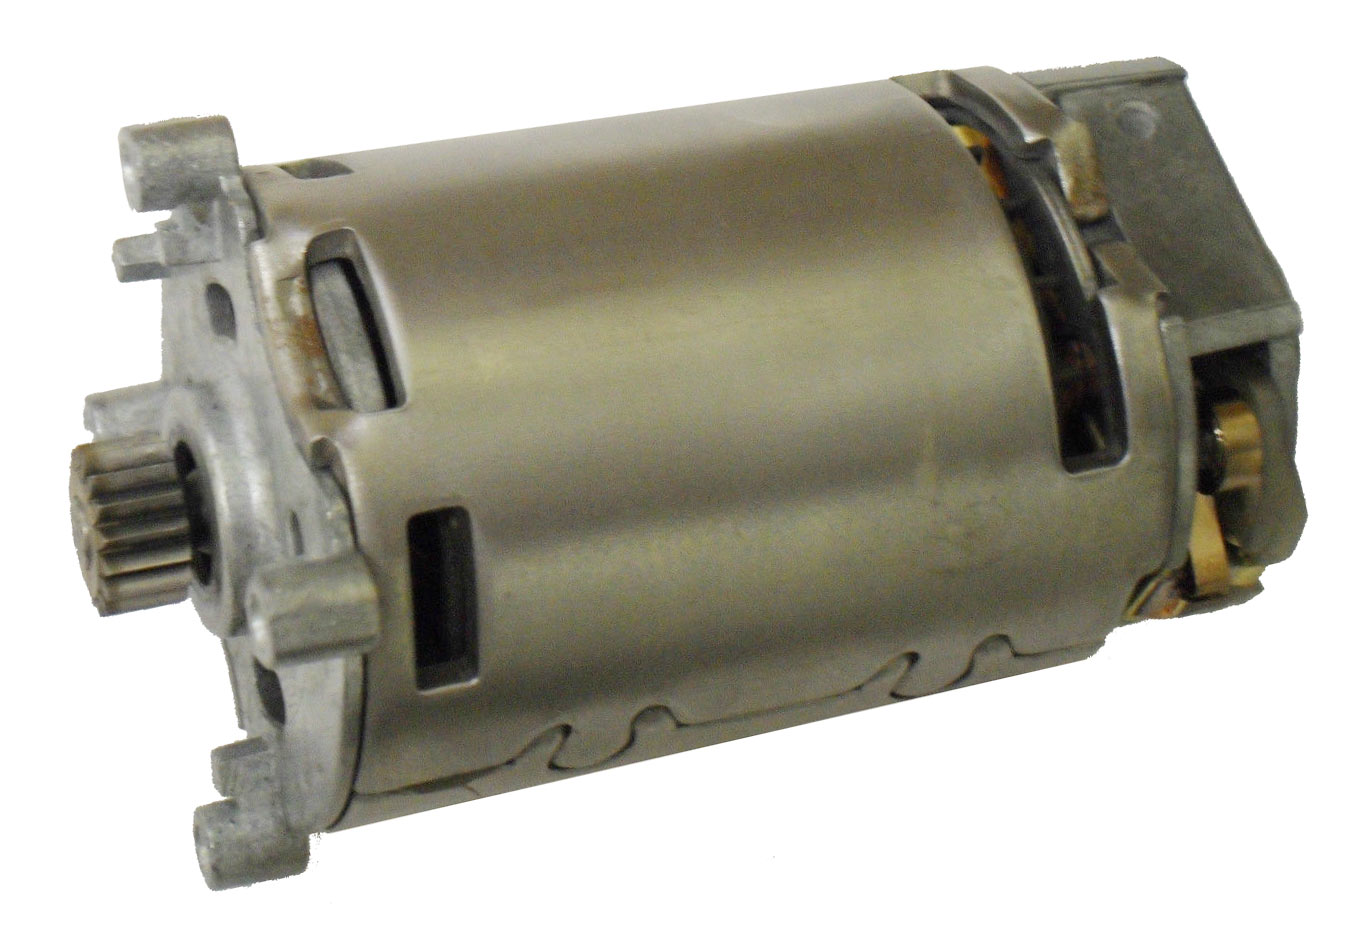 Dewalt - DeWalt Old Drill Motor #393111-04